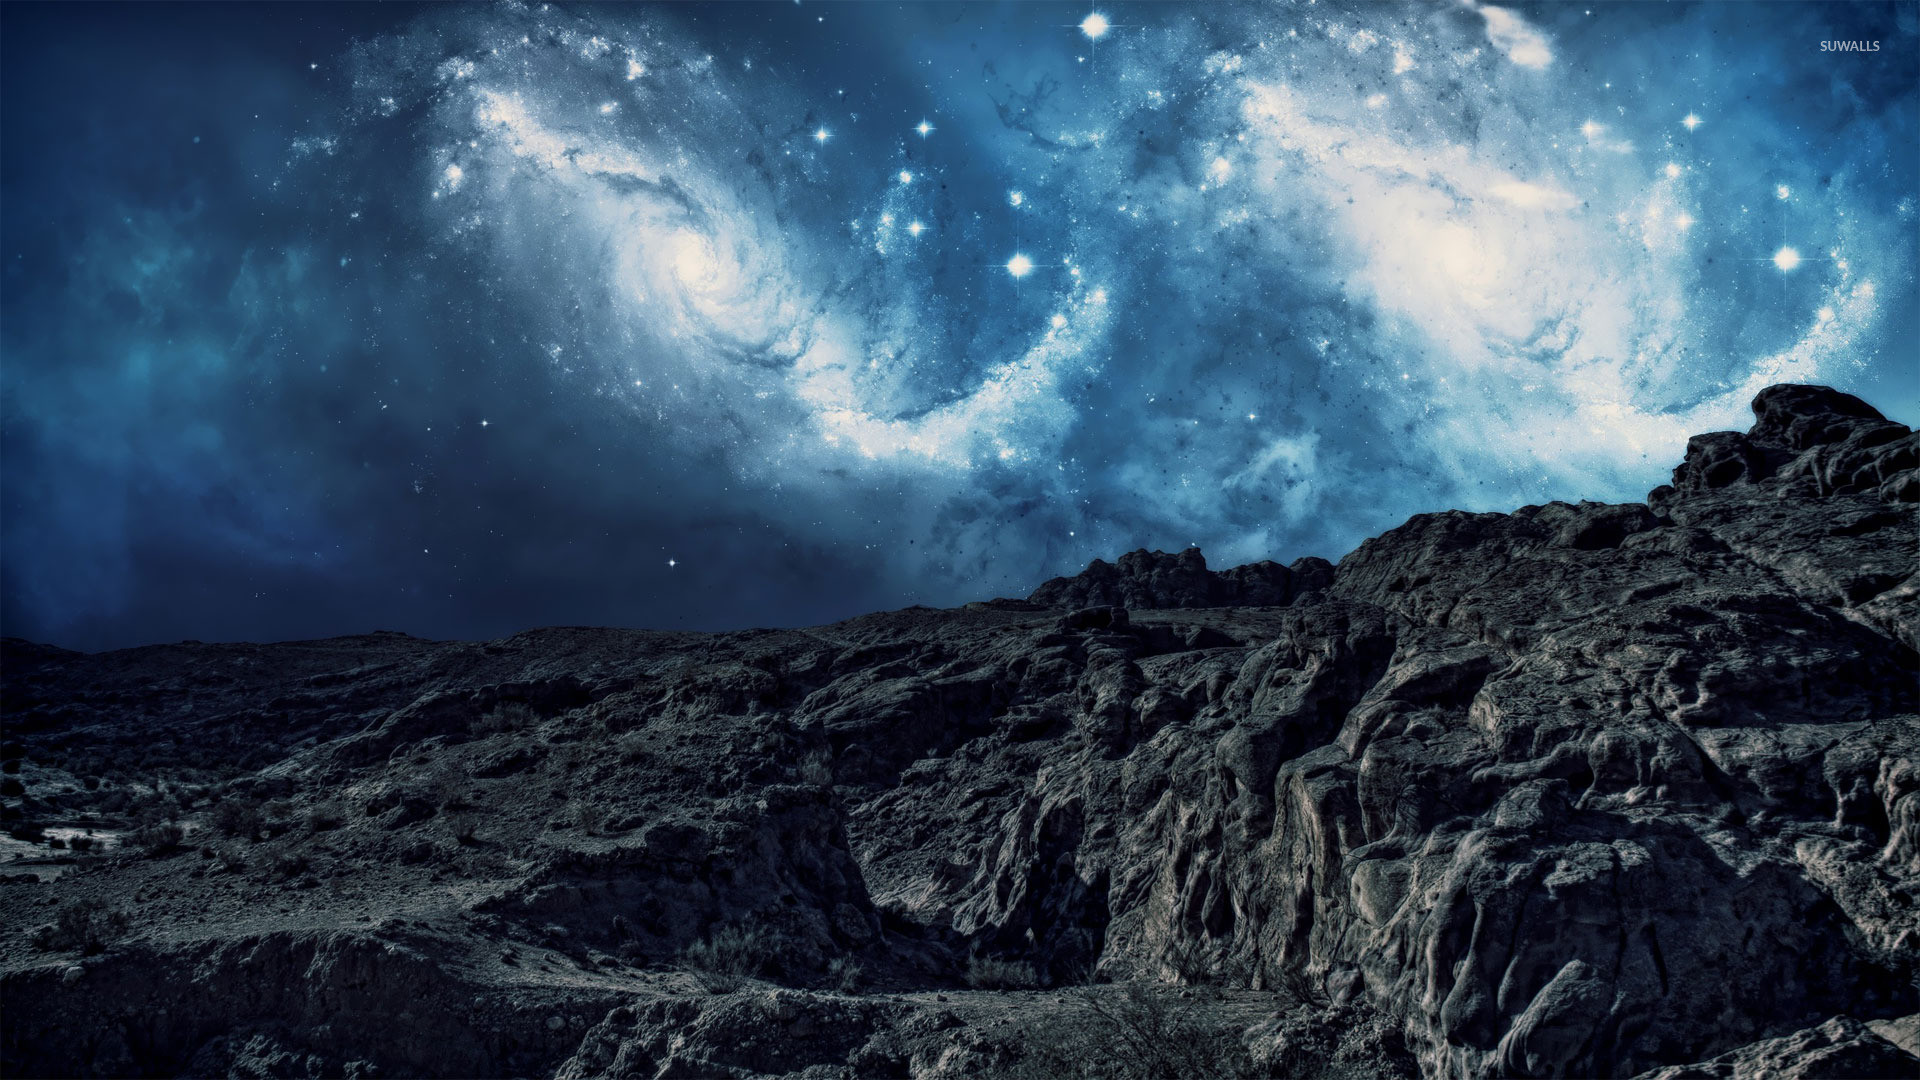 Stargazing on the mountain wallpaper jpg